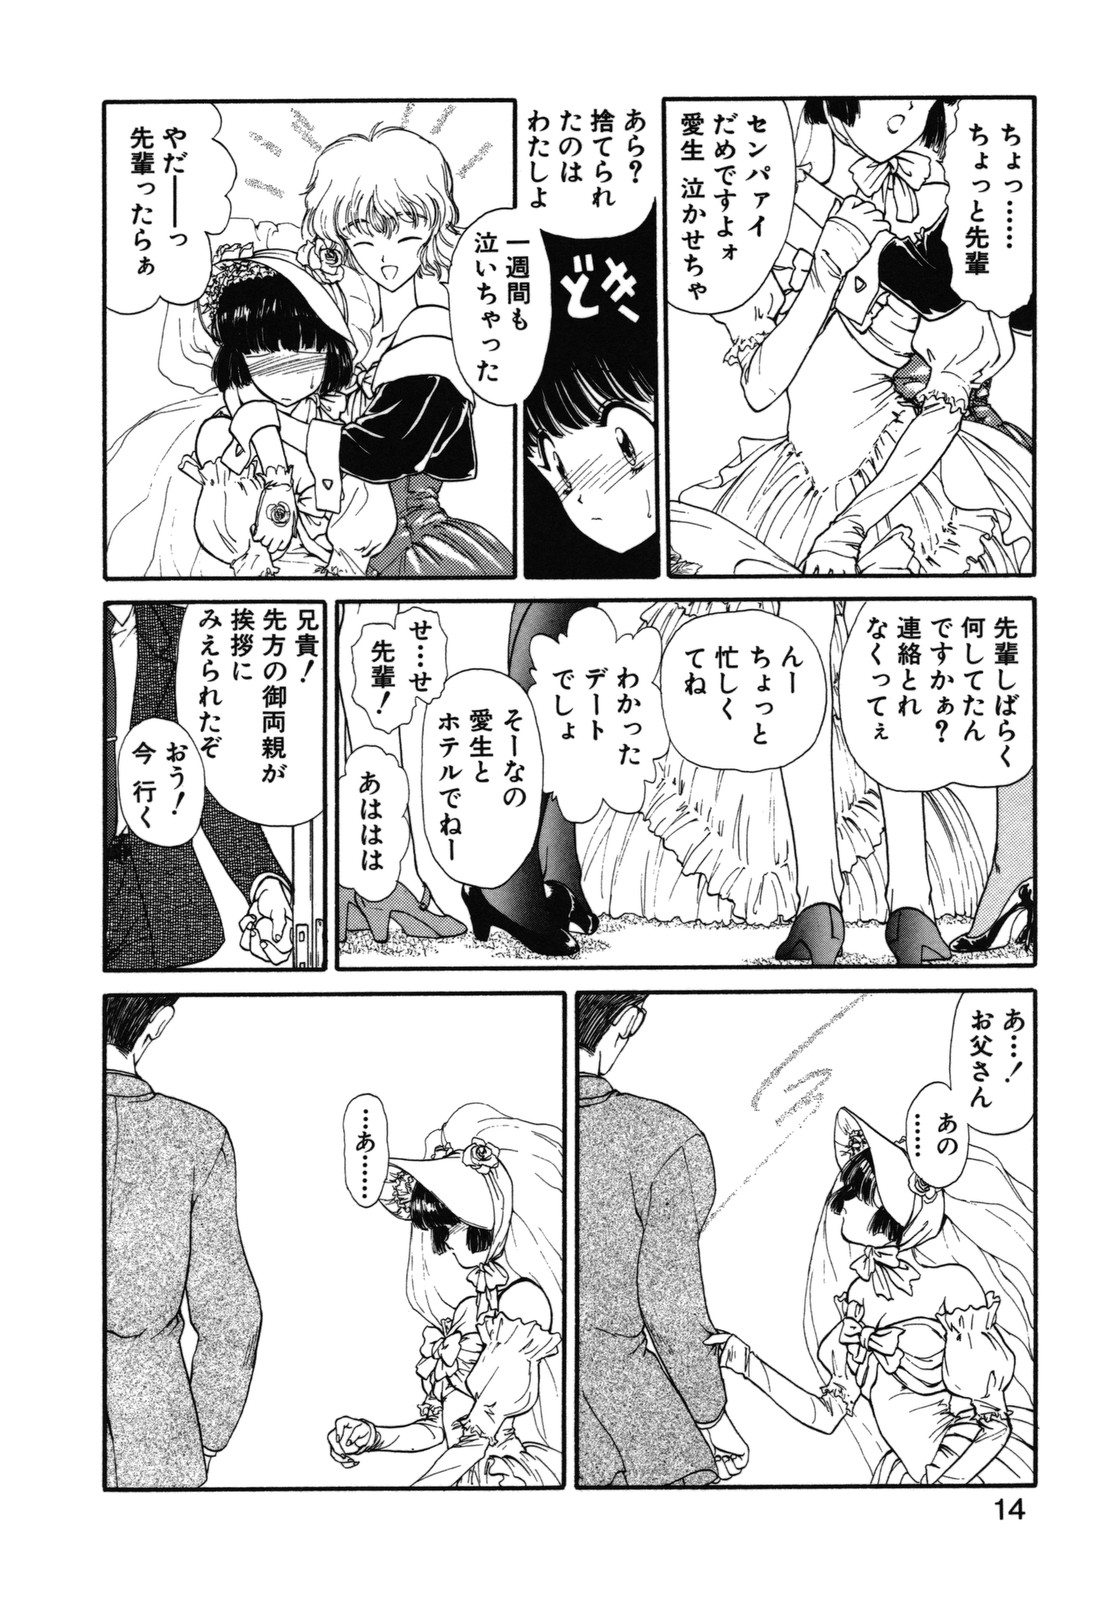 [Utatane Hiroyuki] COUNT DOWN page 15 full